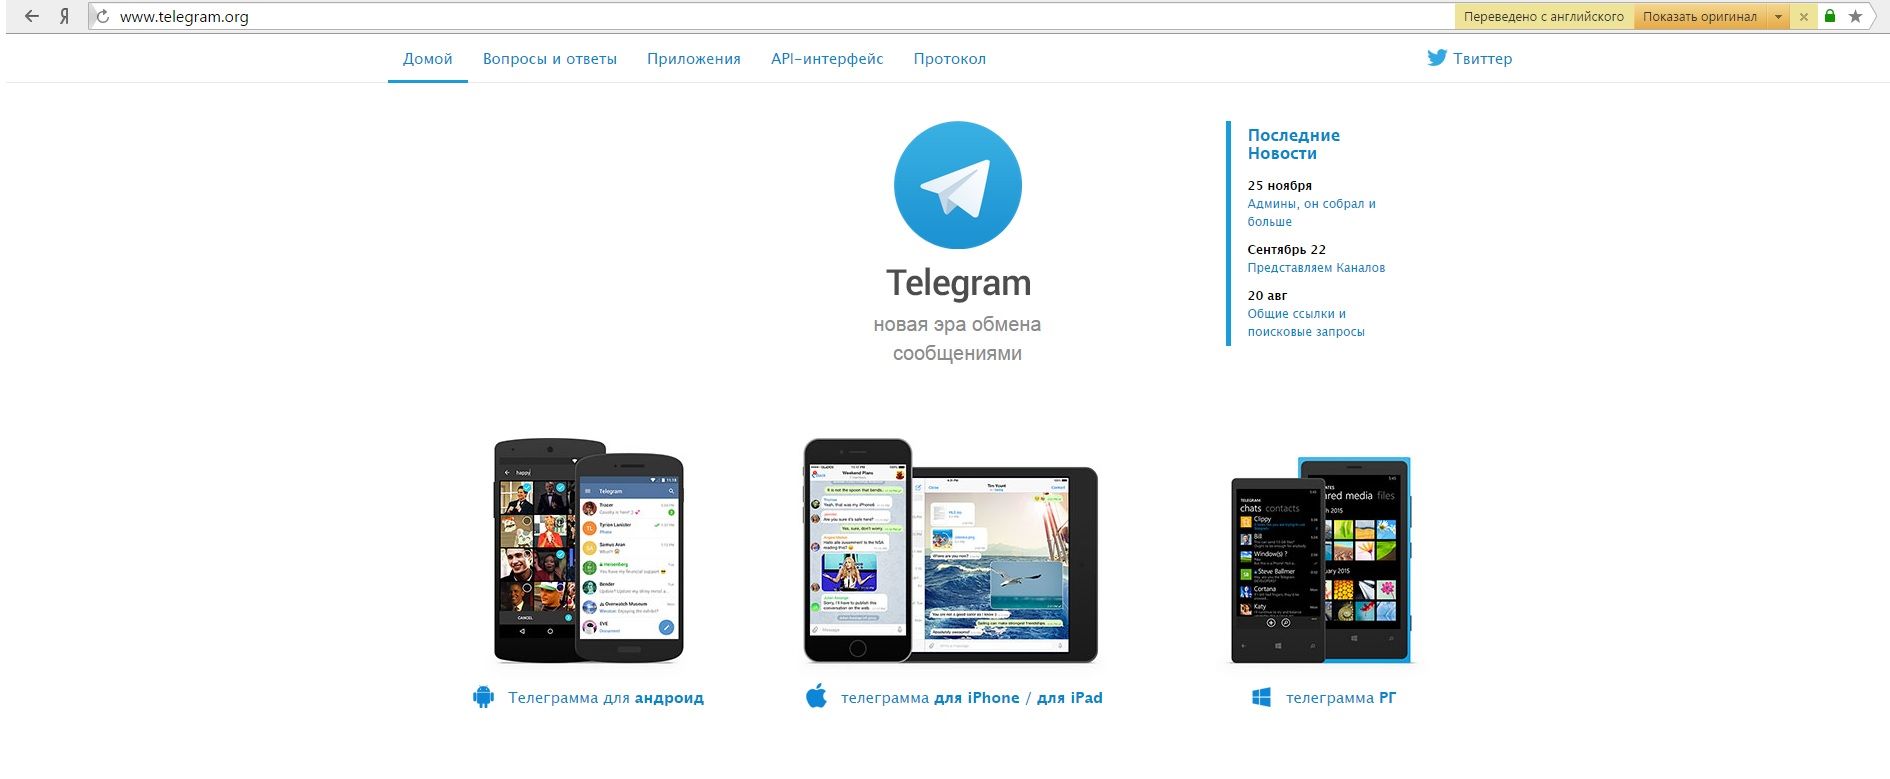 Установить телеграмм на андроид на русском языке инструкция фото 93